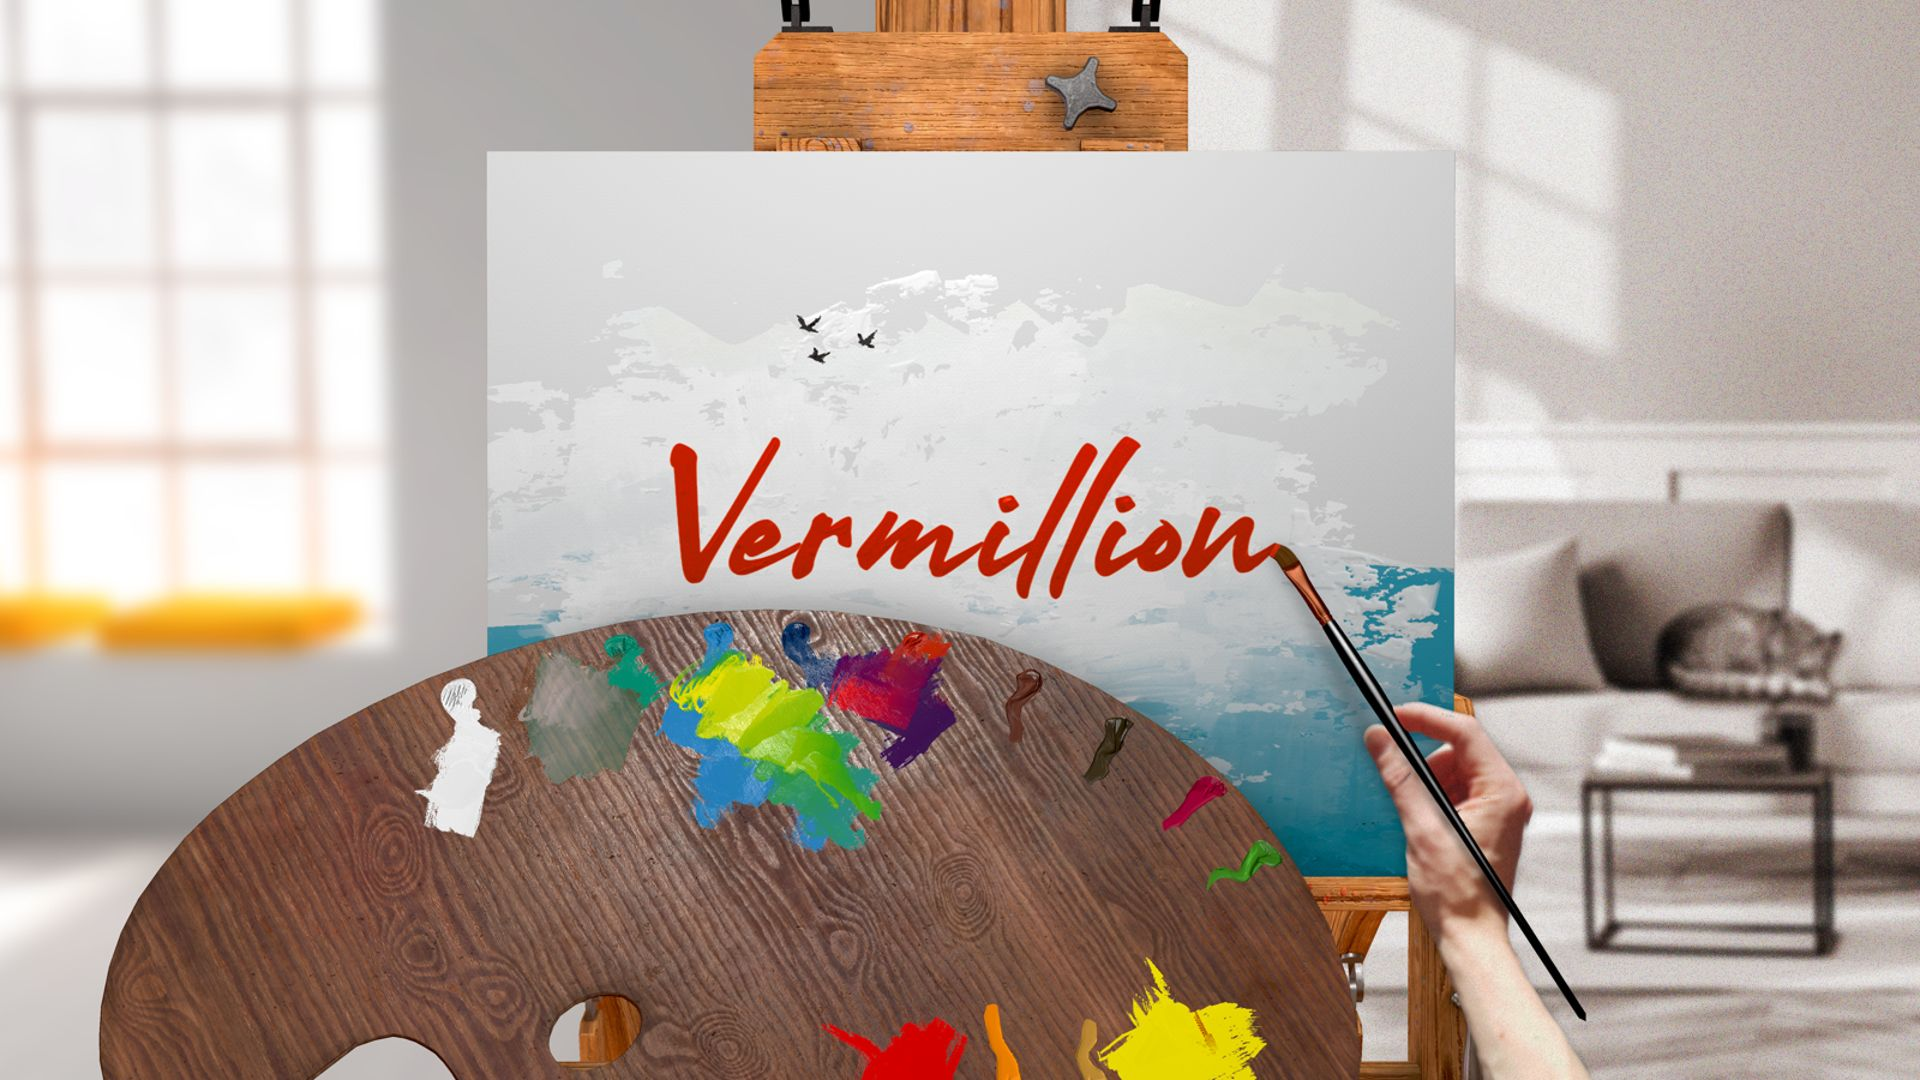 Vermillion: Ez a festőprogram valóban lenyűgöző